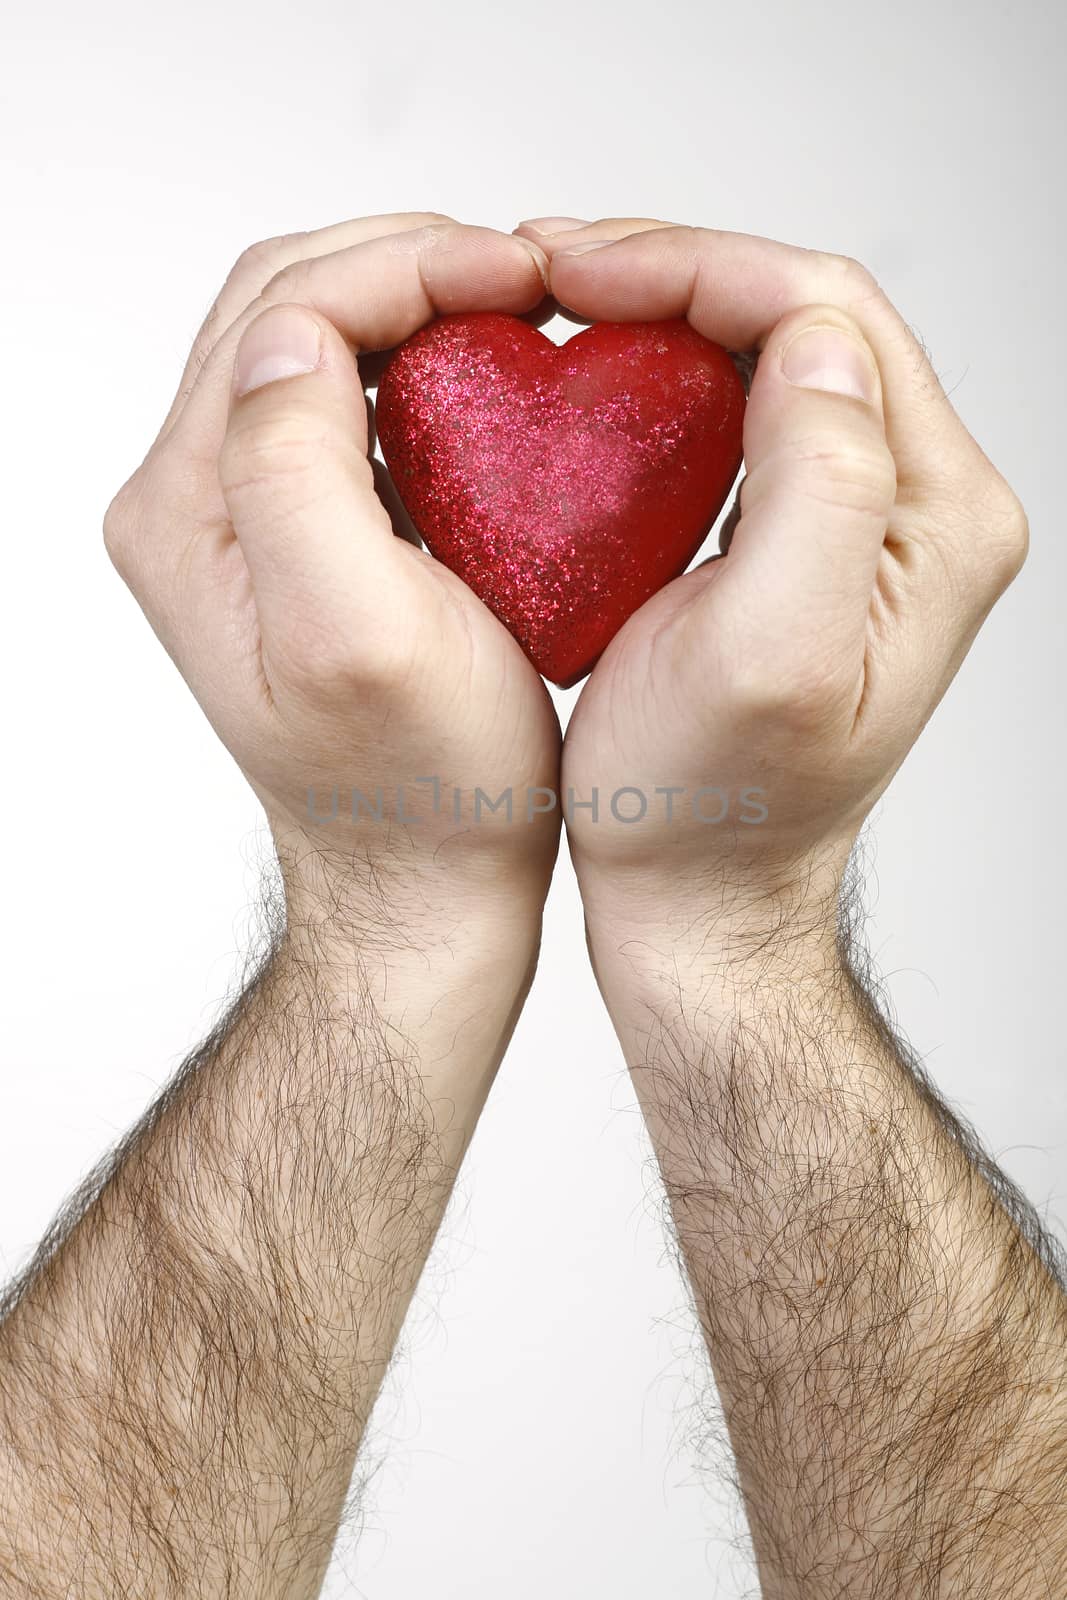 Heart in hands by nemar74